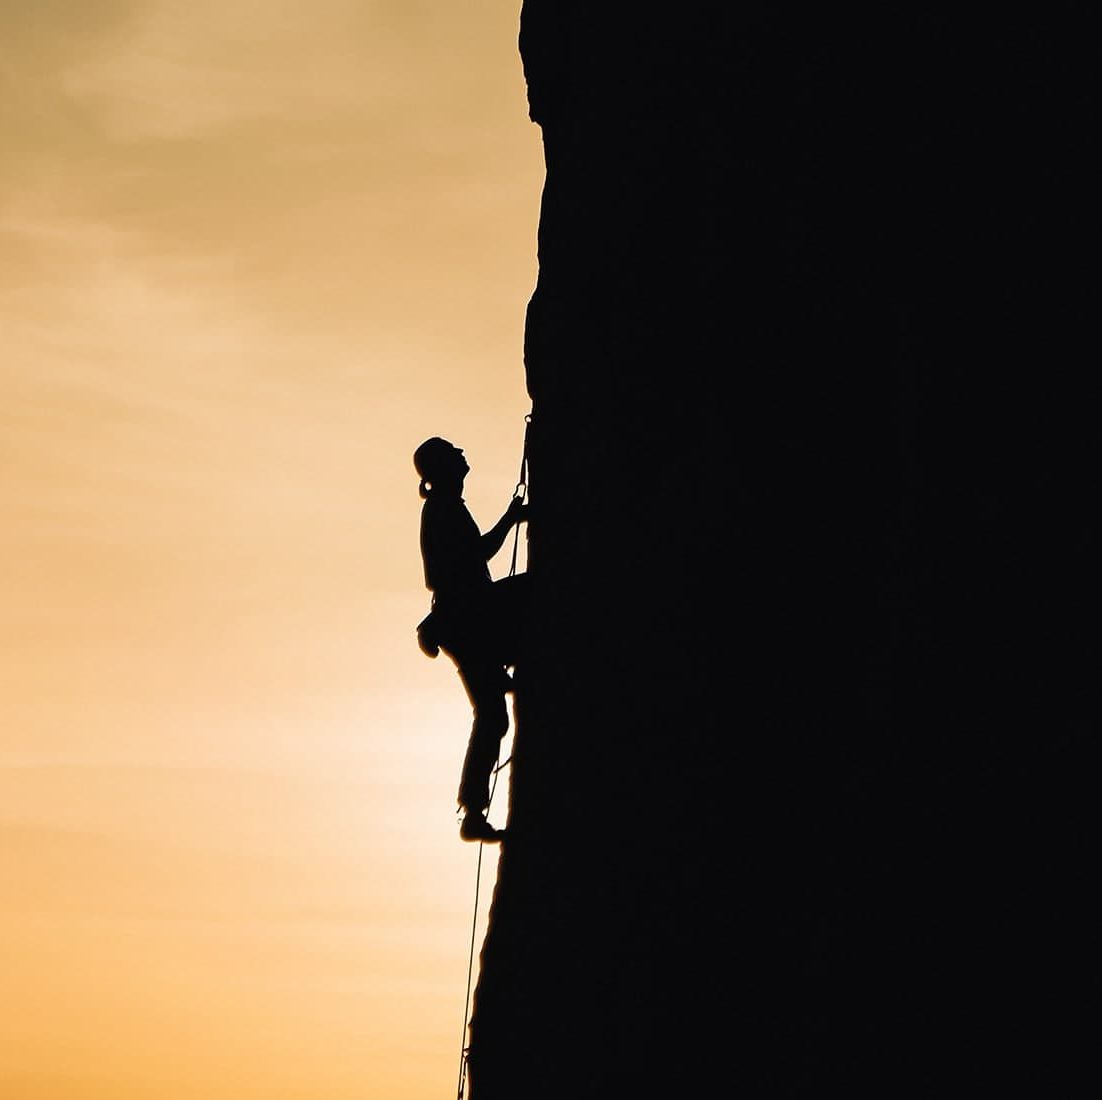 A woman rock climbing at sunset